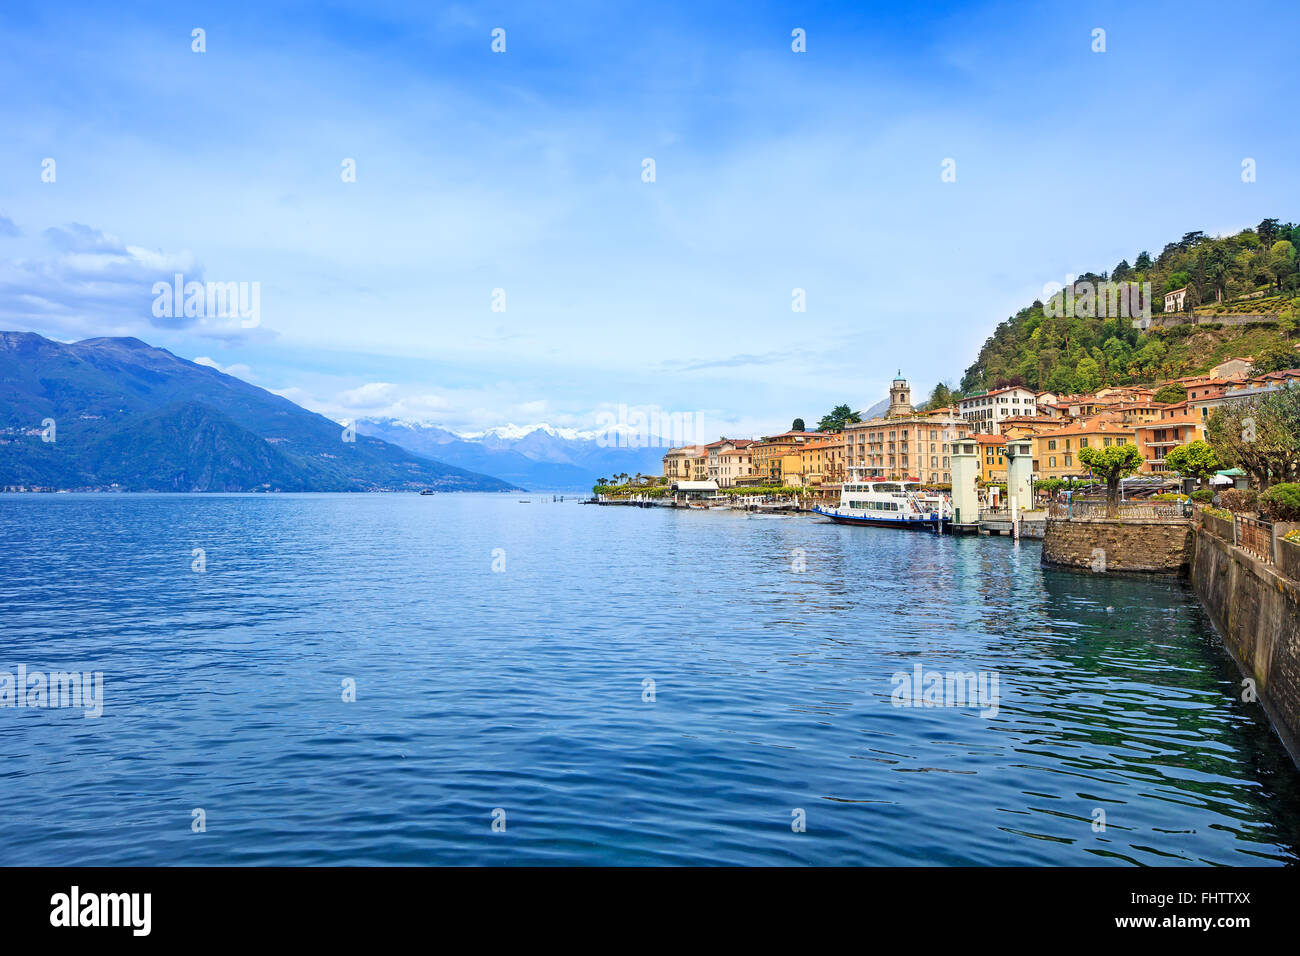 Bellagio Stadt Como Lake District. Landschaft mit Marina und traditionelle italienische See Dorf. Auf Hintergrund Alpen Berge co Stockfoto